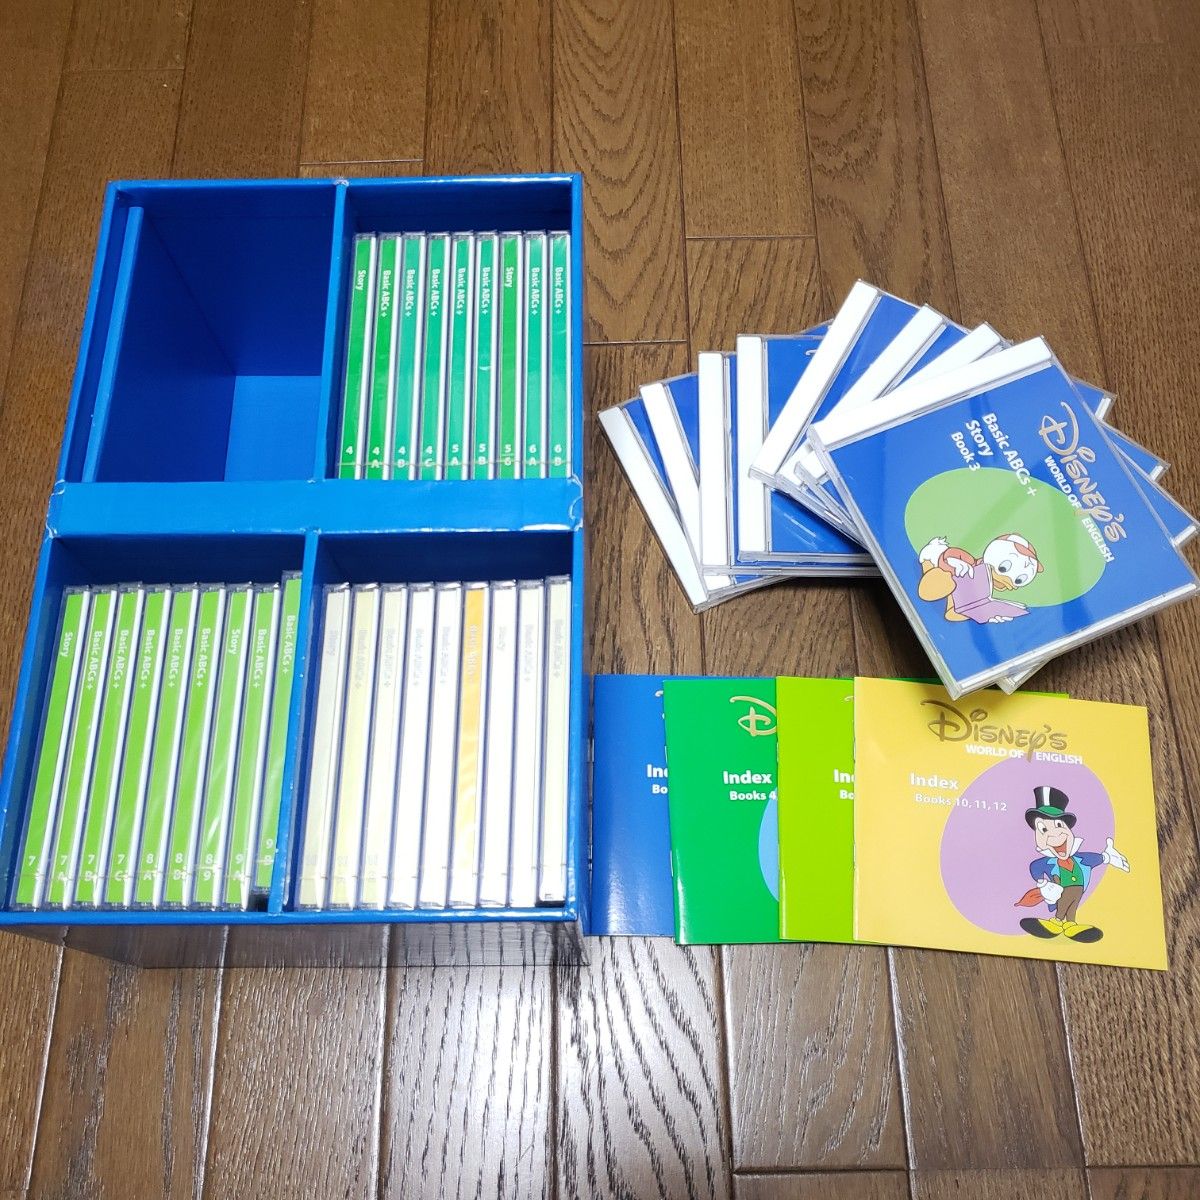 ディズニー英語システム メインプログラム CD 絵本 宝箱セット｜PayPay